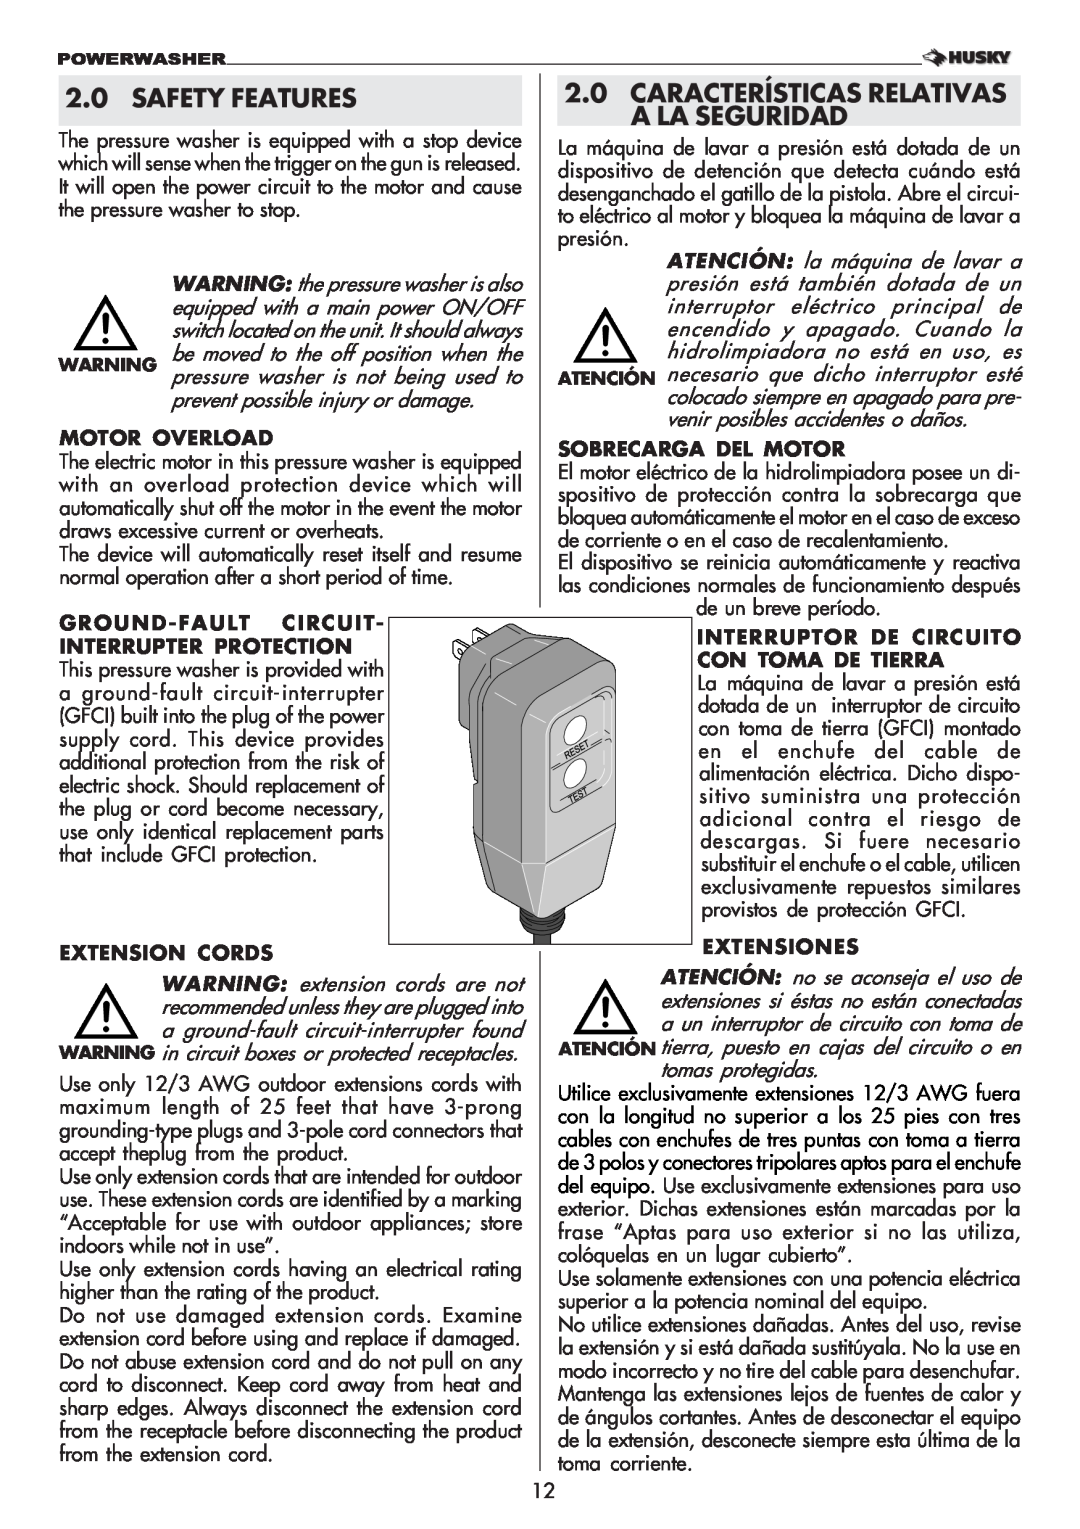 Husky 1750 US manual Safety Features, Características Relativas, A La Seguridad 